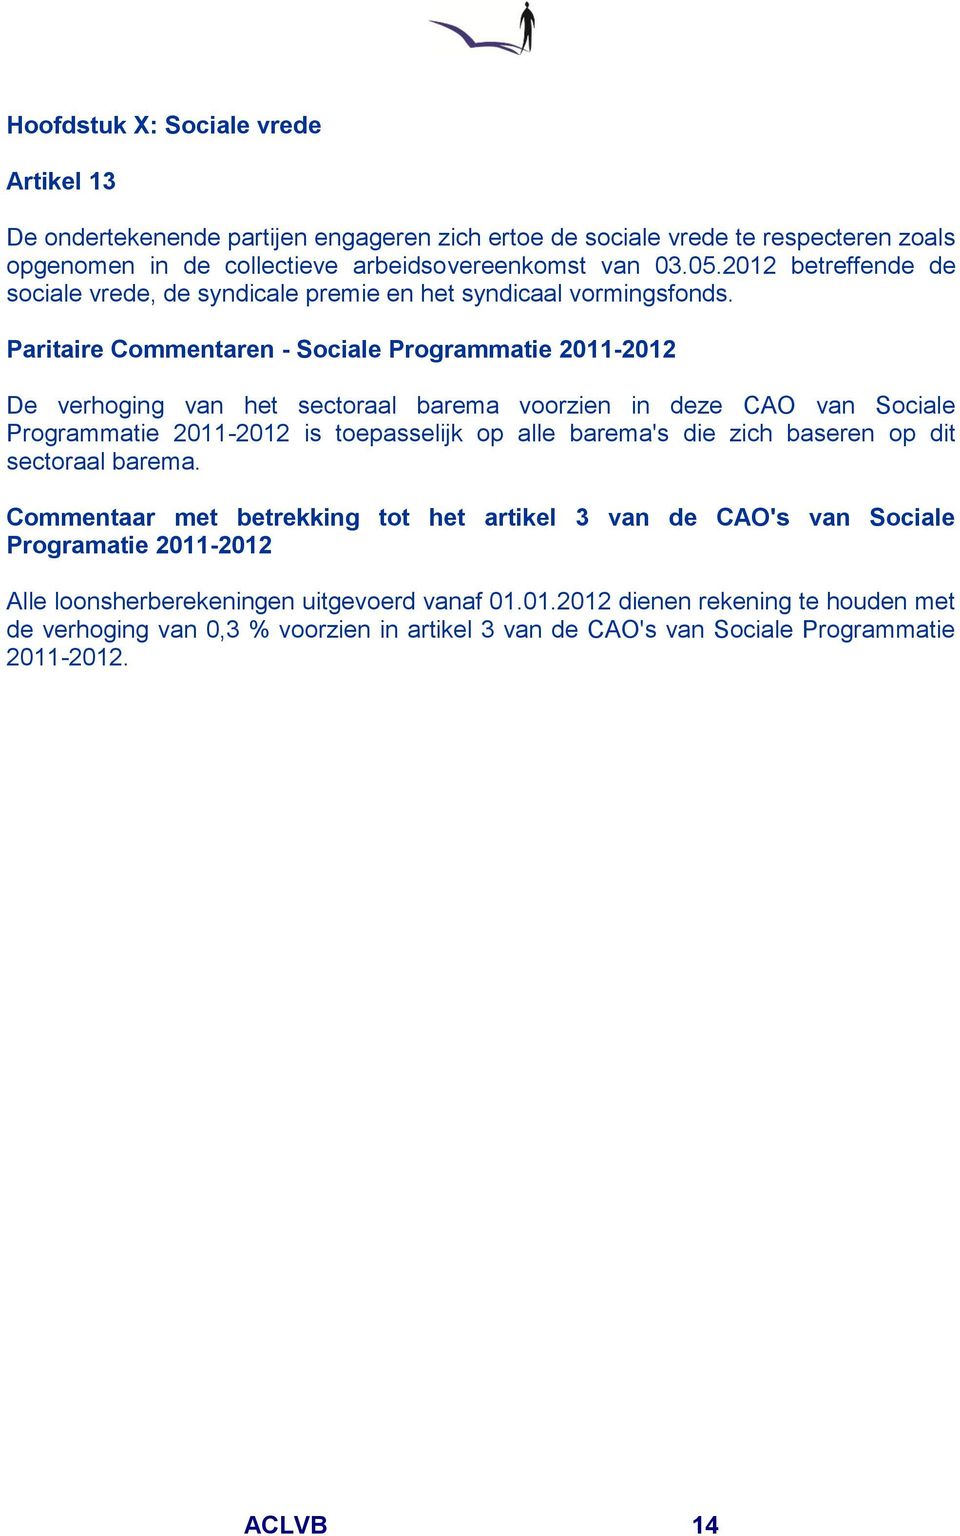 Paritaire Commentaren - Sociale Programmatie 2011-2012 De verhoging van het sectoraal barema voorzien in deze CAO van Sociale Programmatie 2011-2012 is toepasselijk op alle barema's die zich